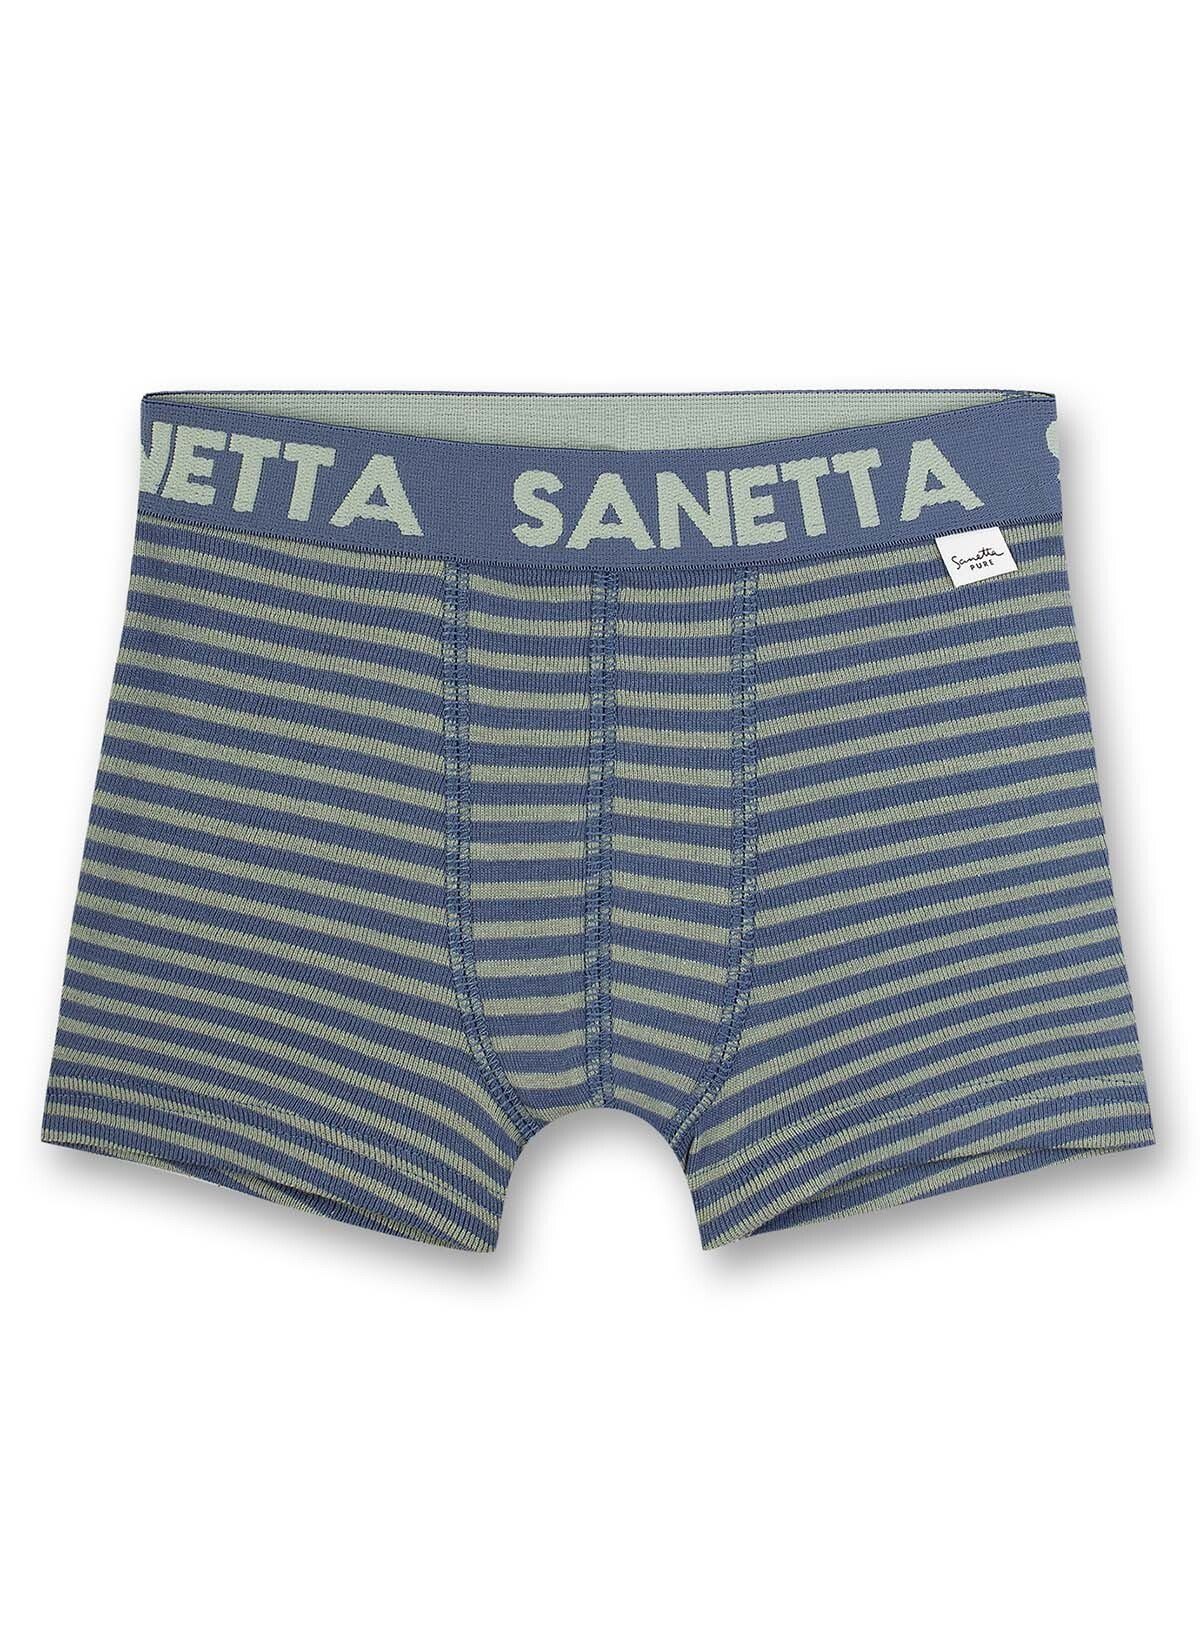 Pants, Sanetta Unterhose, Boxer - Jungen Shorts gestreift